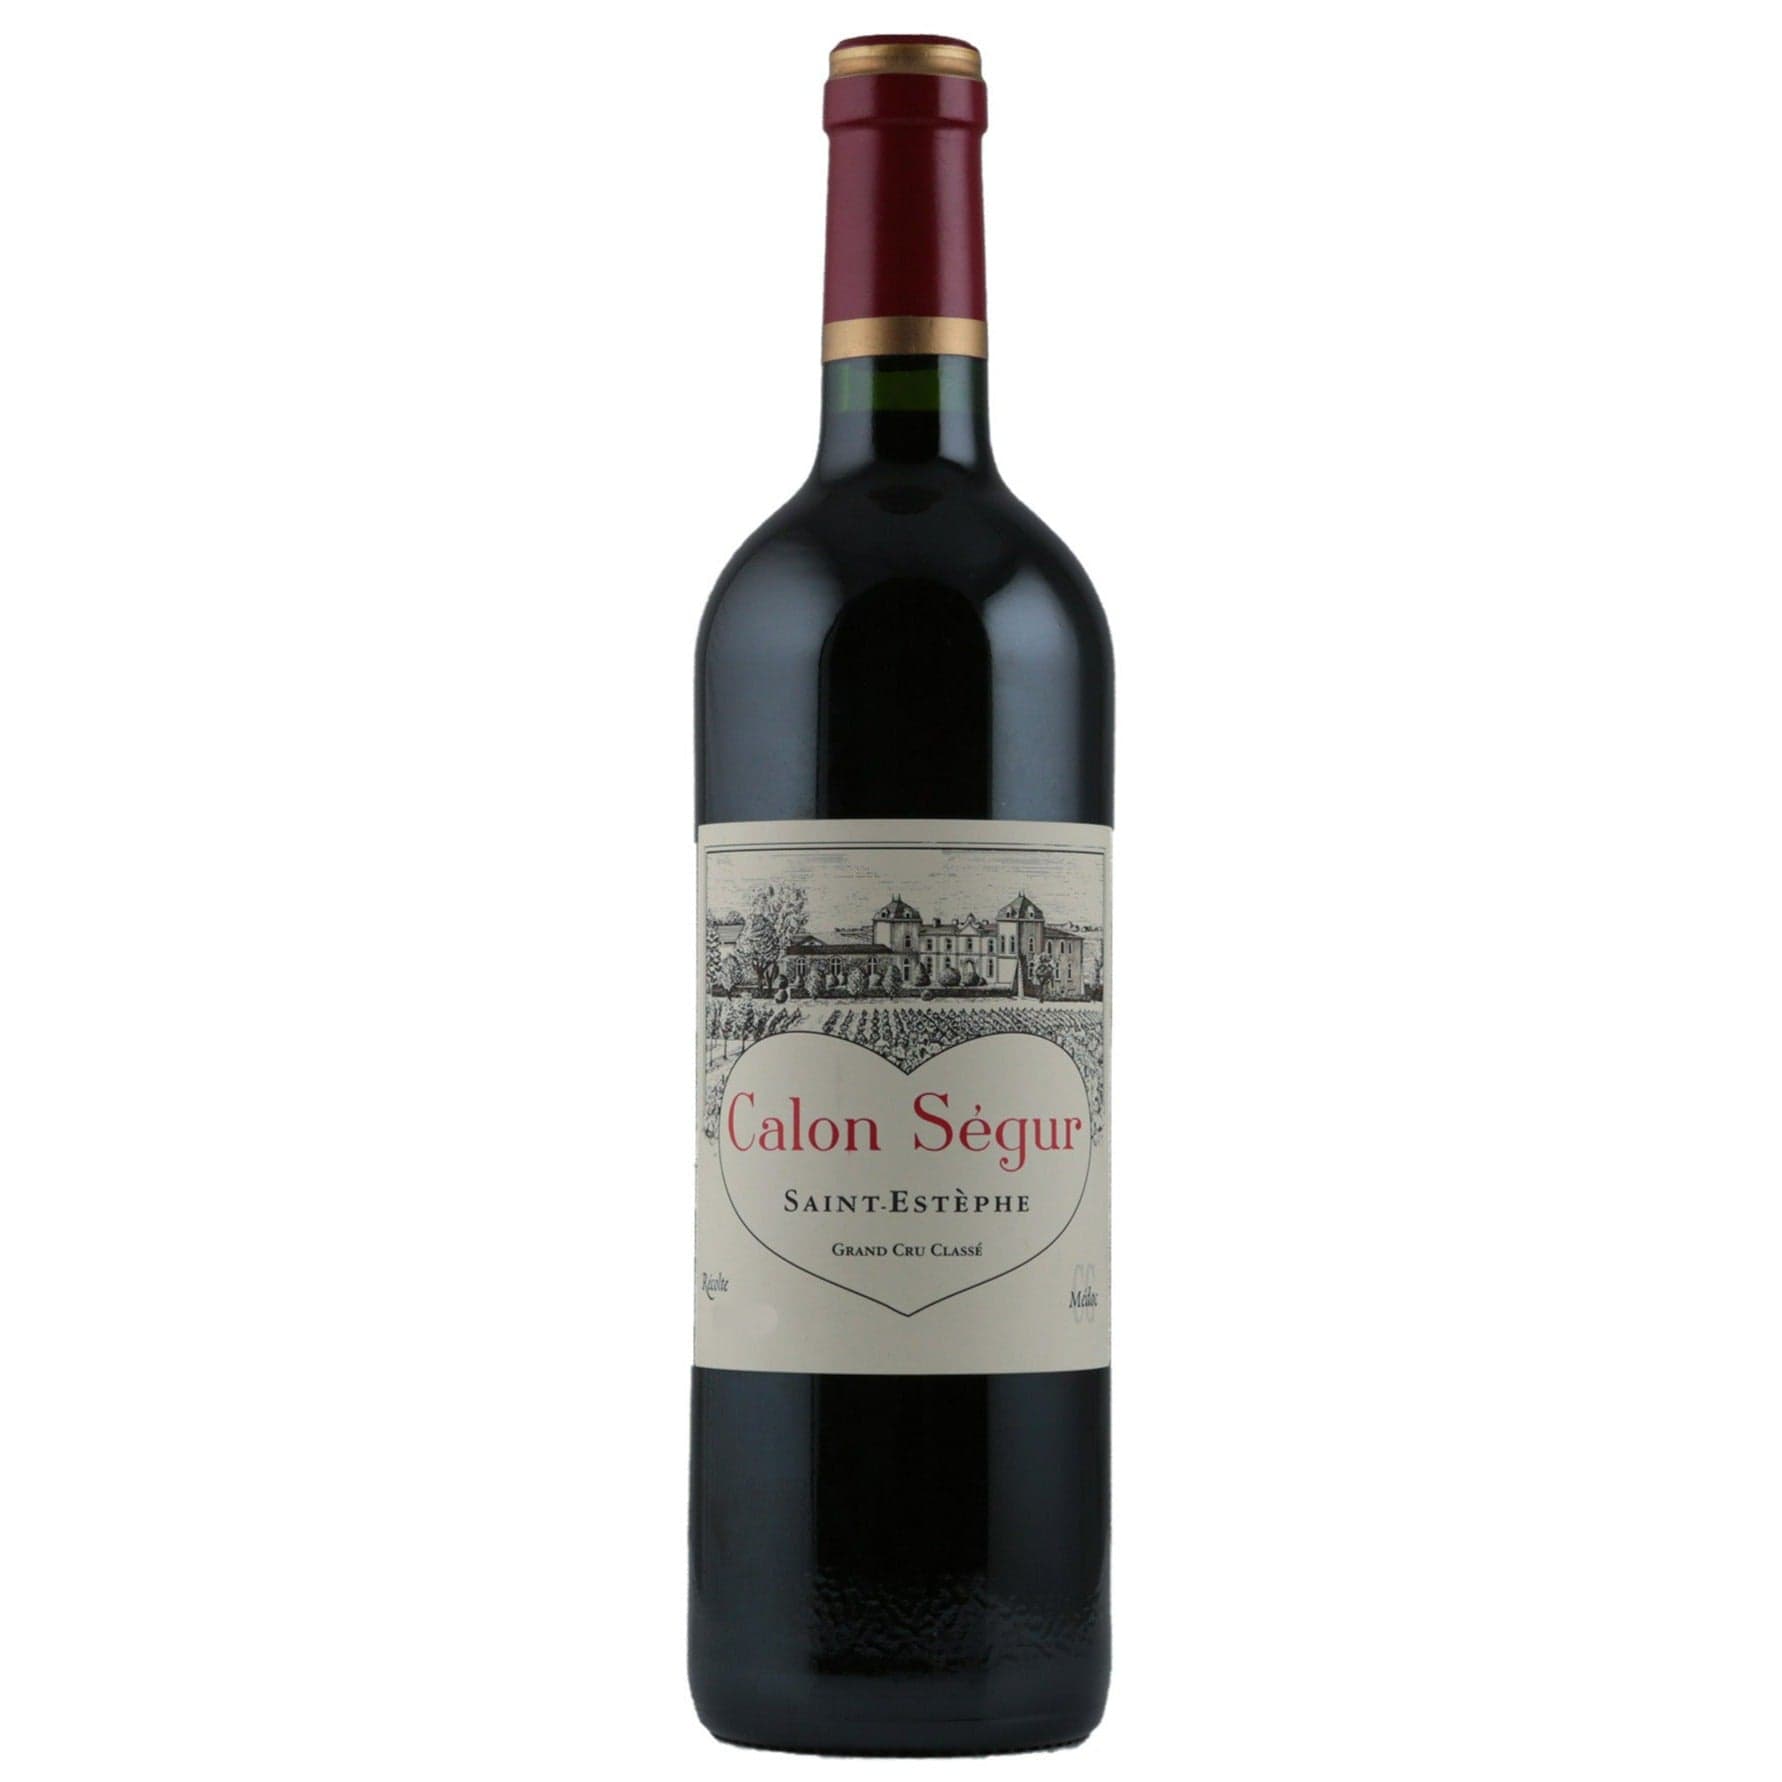 Single bottle of Red wine Ch. Calon-Segur, 3rd Growth Grand Cru Classe, Saint-Estephe, 2016 57% Cabernet Sauvignon, 34% Merlot, 7% Cabernet Franc & 2% Petit Verdot